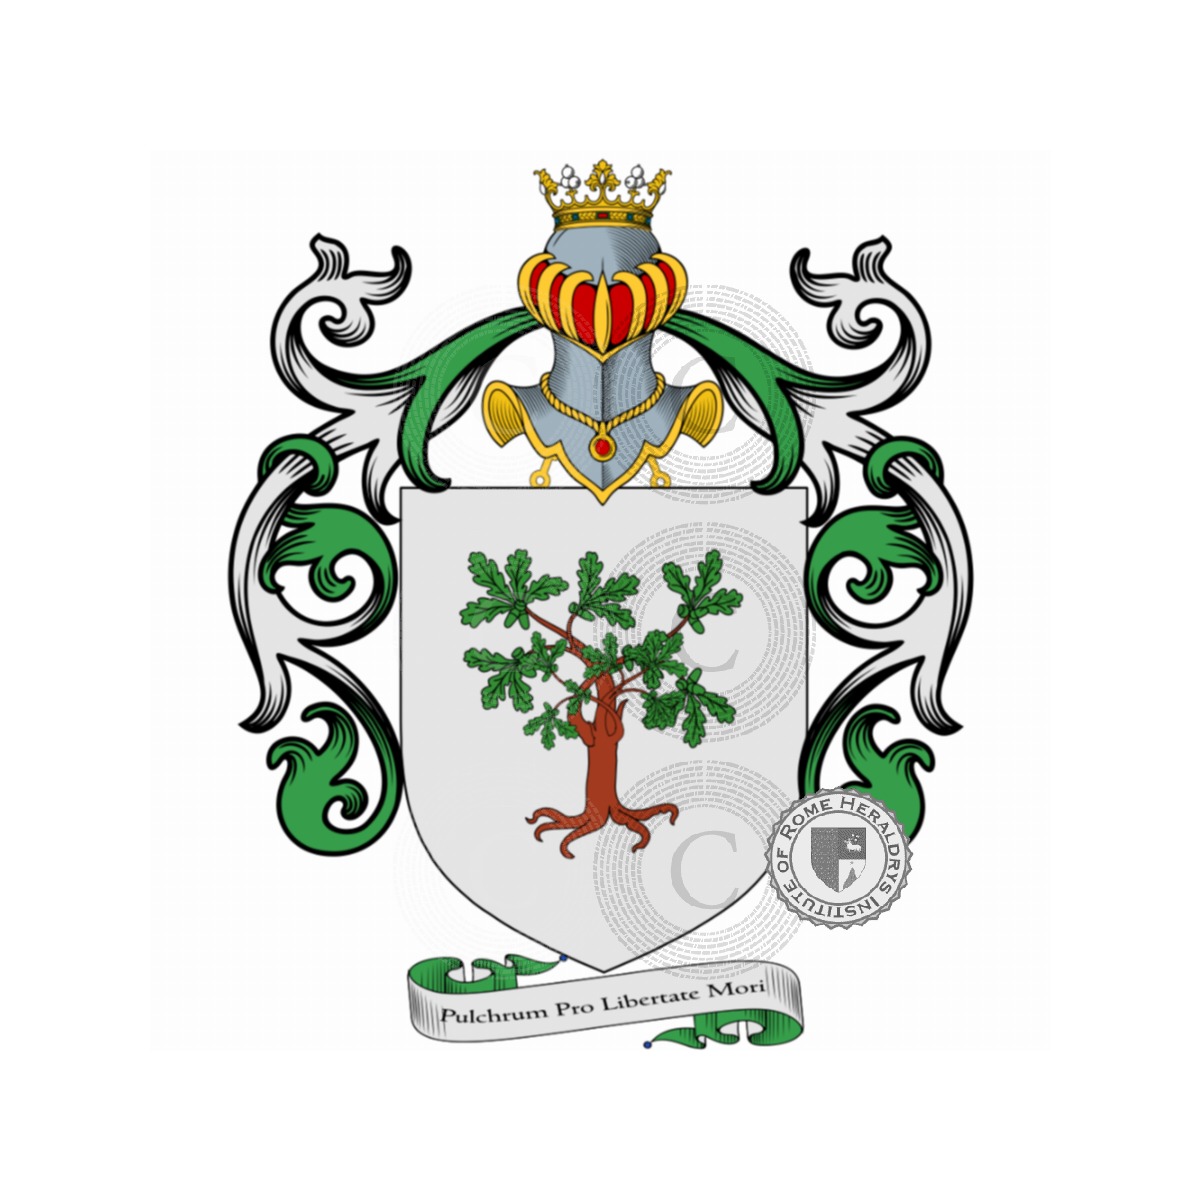 Escudo de la familiaFachinetti, Facchinetti,Fachenetti,Fachinetus